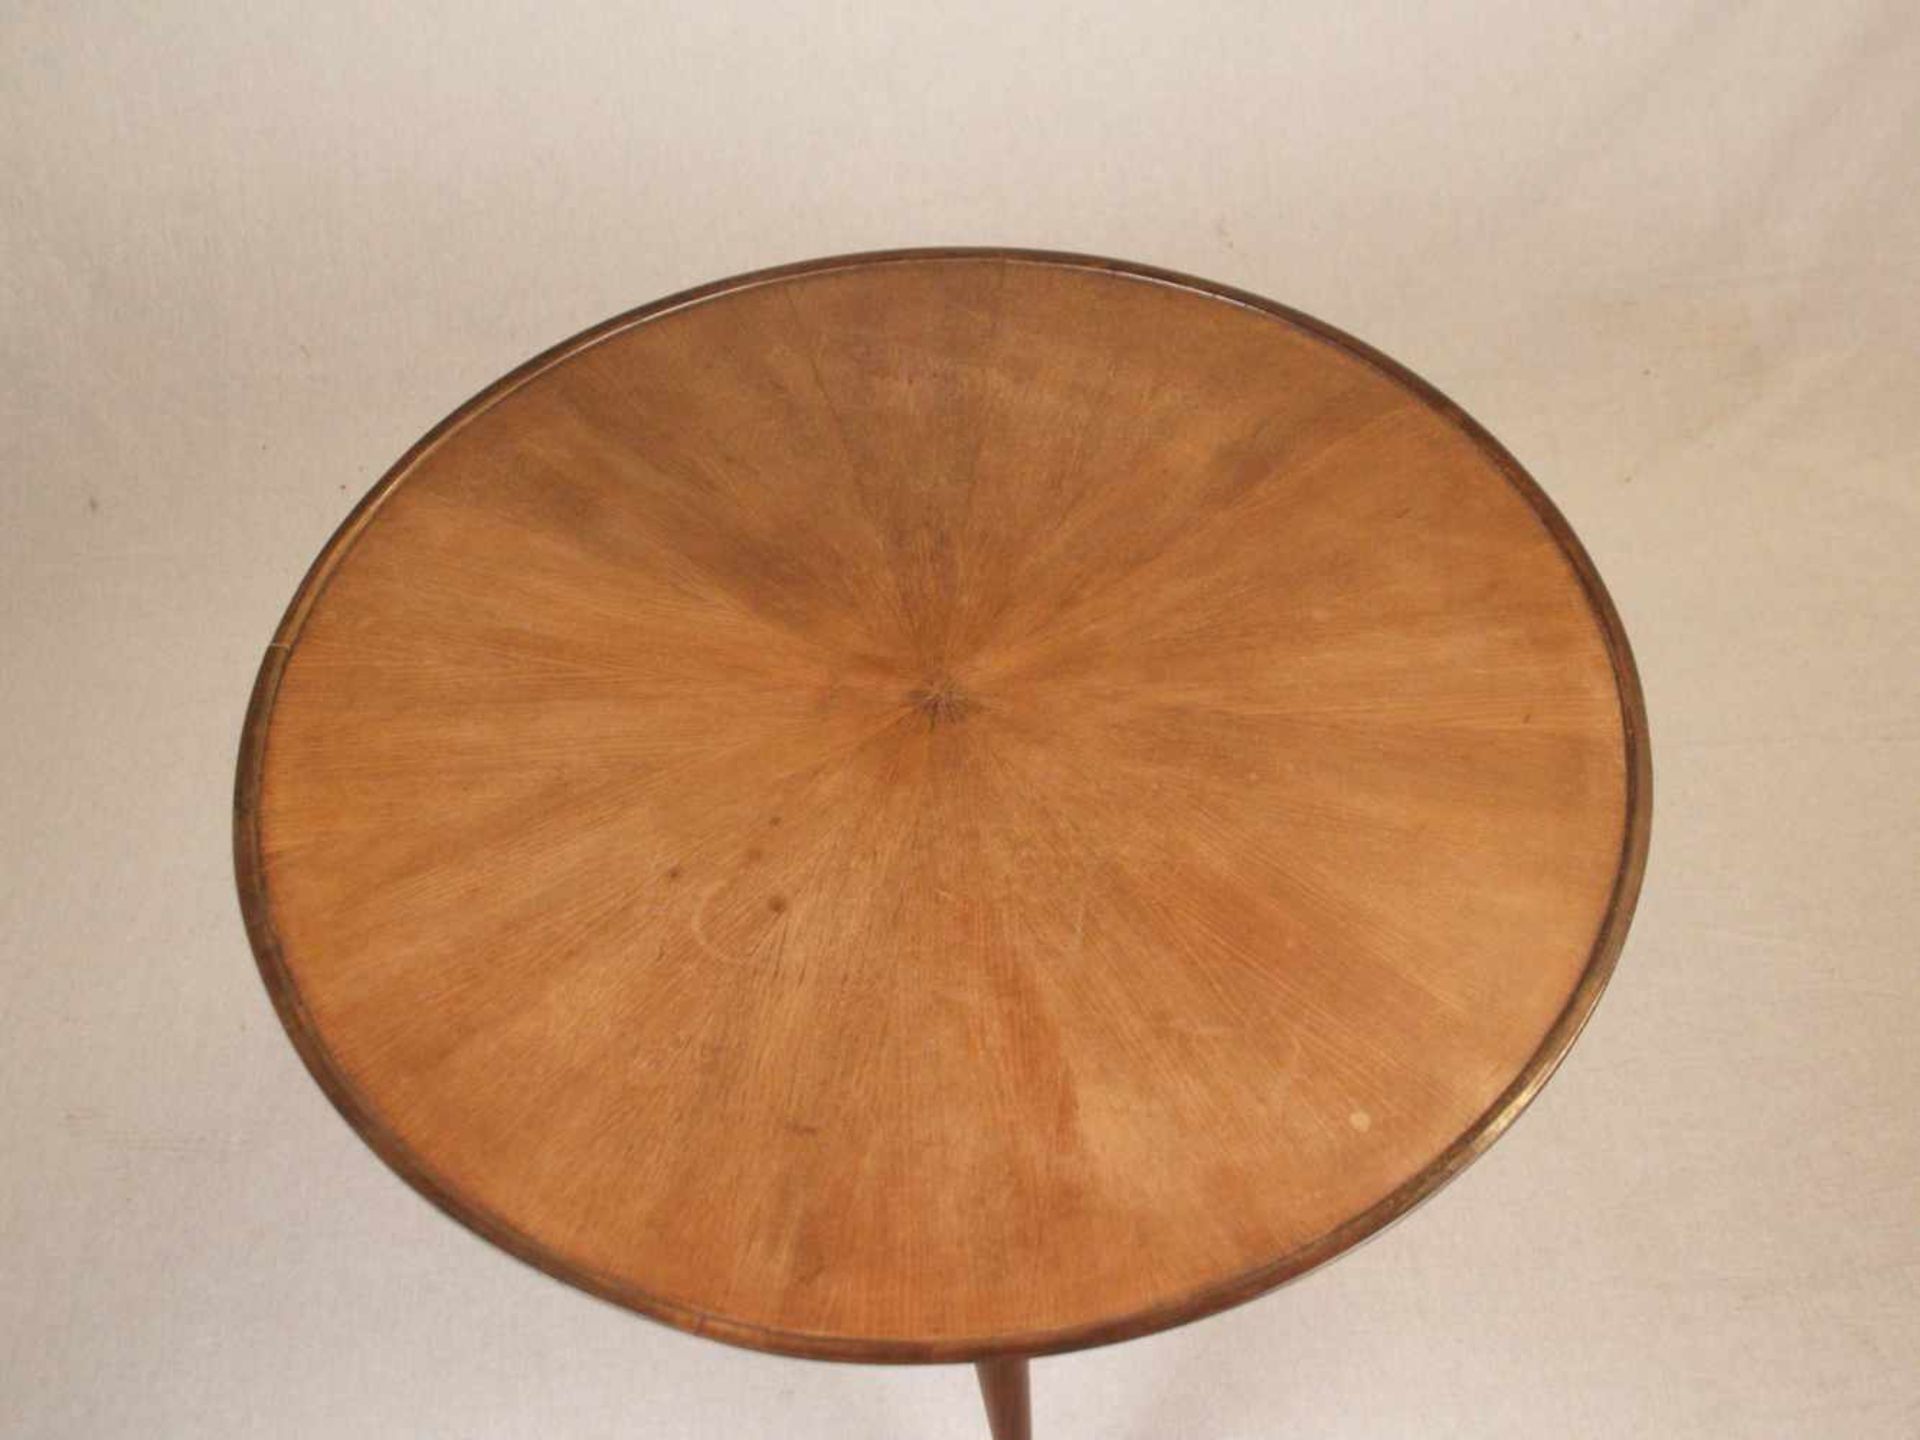 Couchtisch - runde marketierte Platte auf dreibeinigem Stand, Holz teils gebeizt, Höhe.ca.52cm, - Image 2 of 6